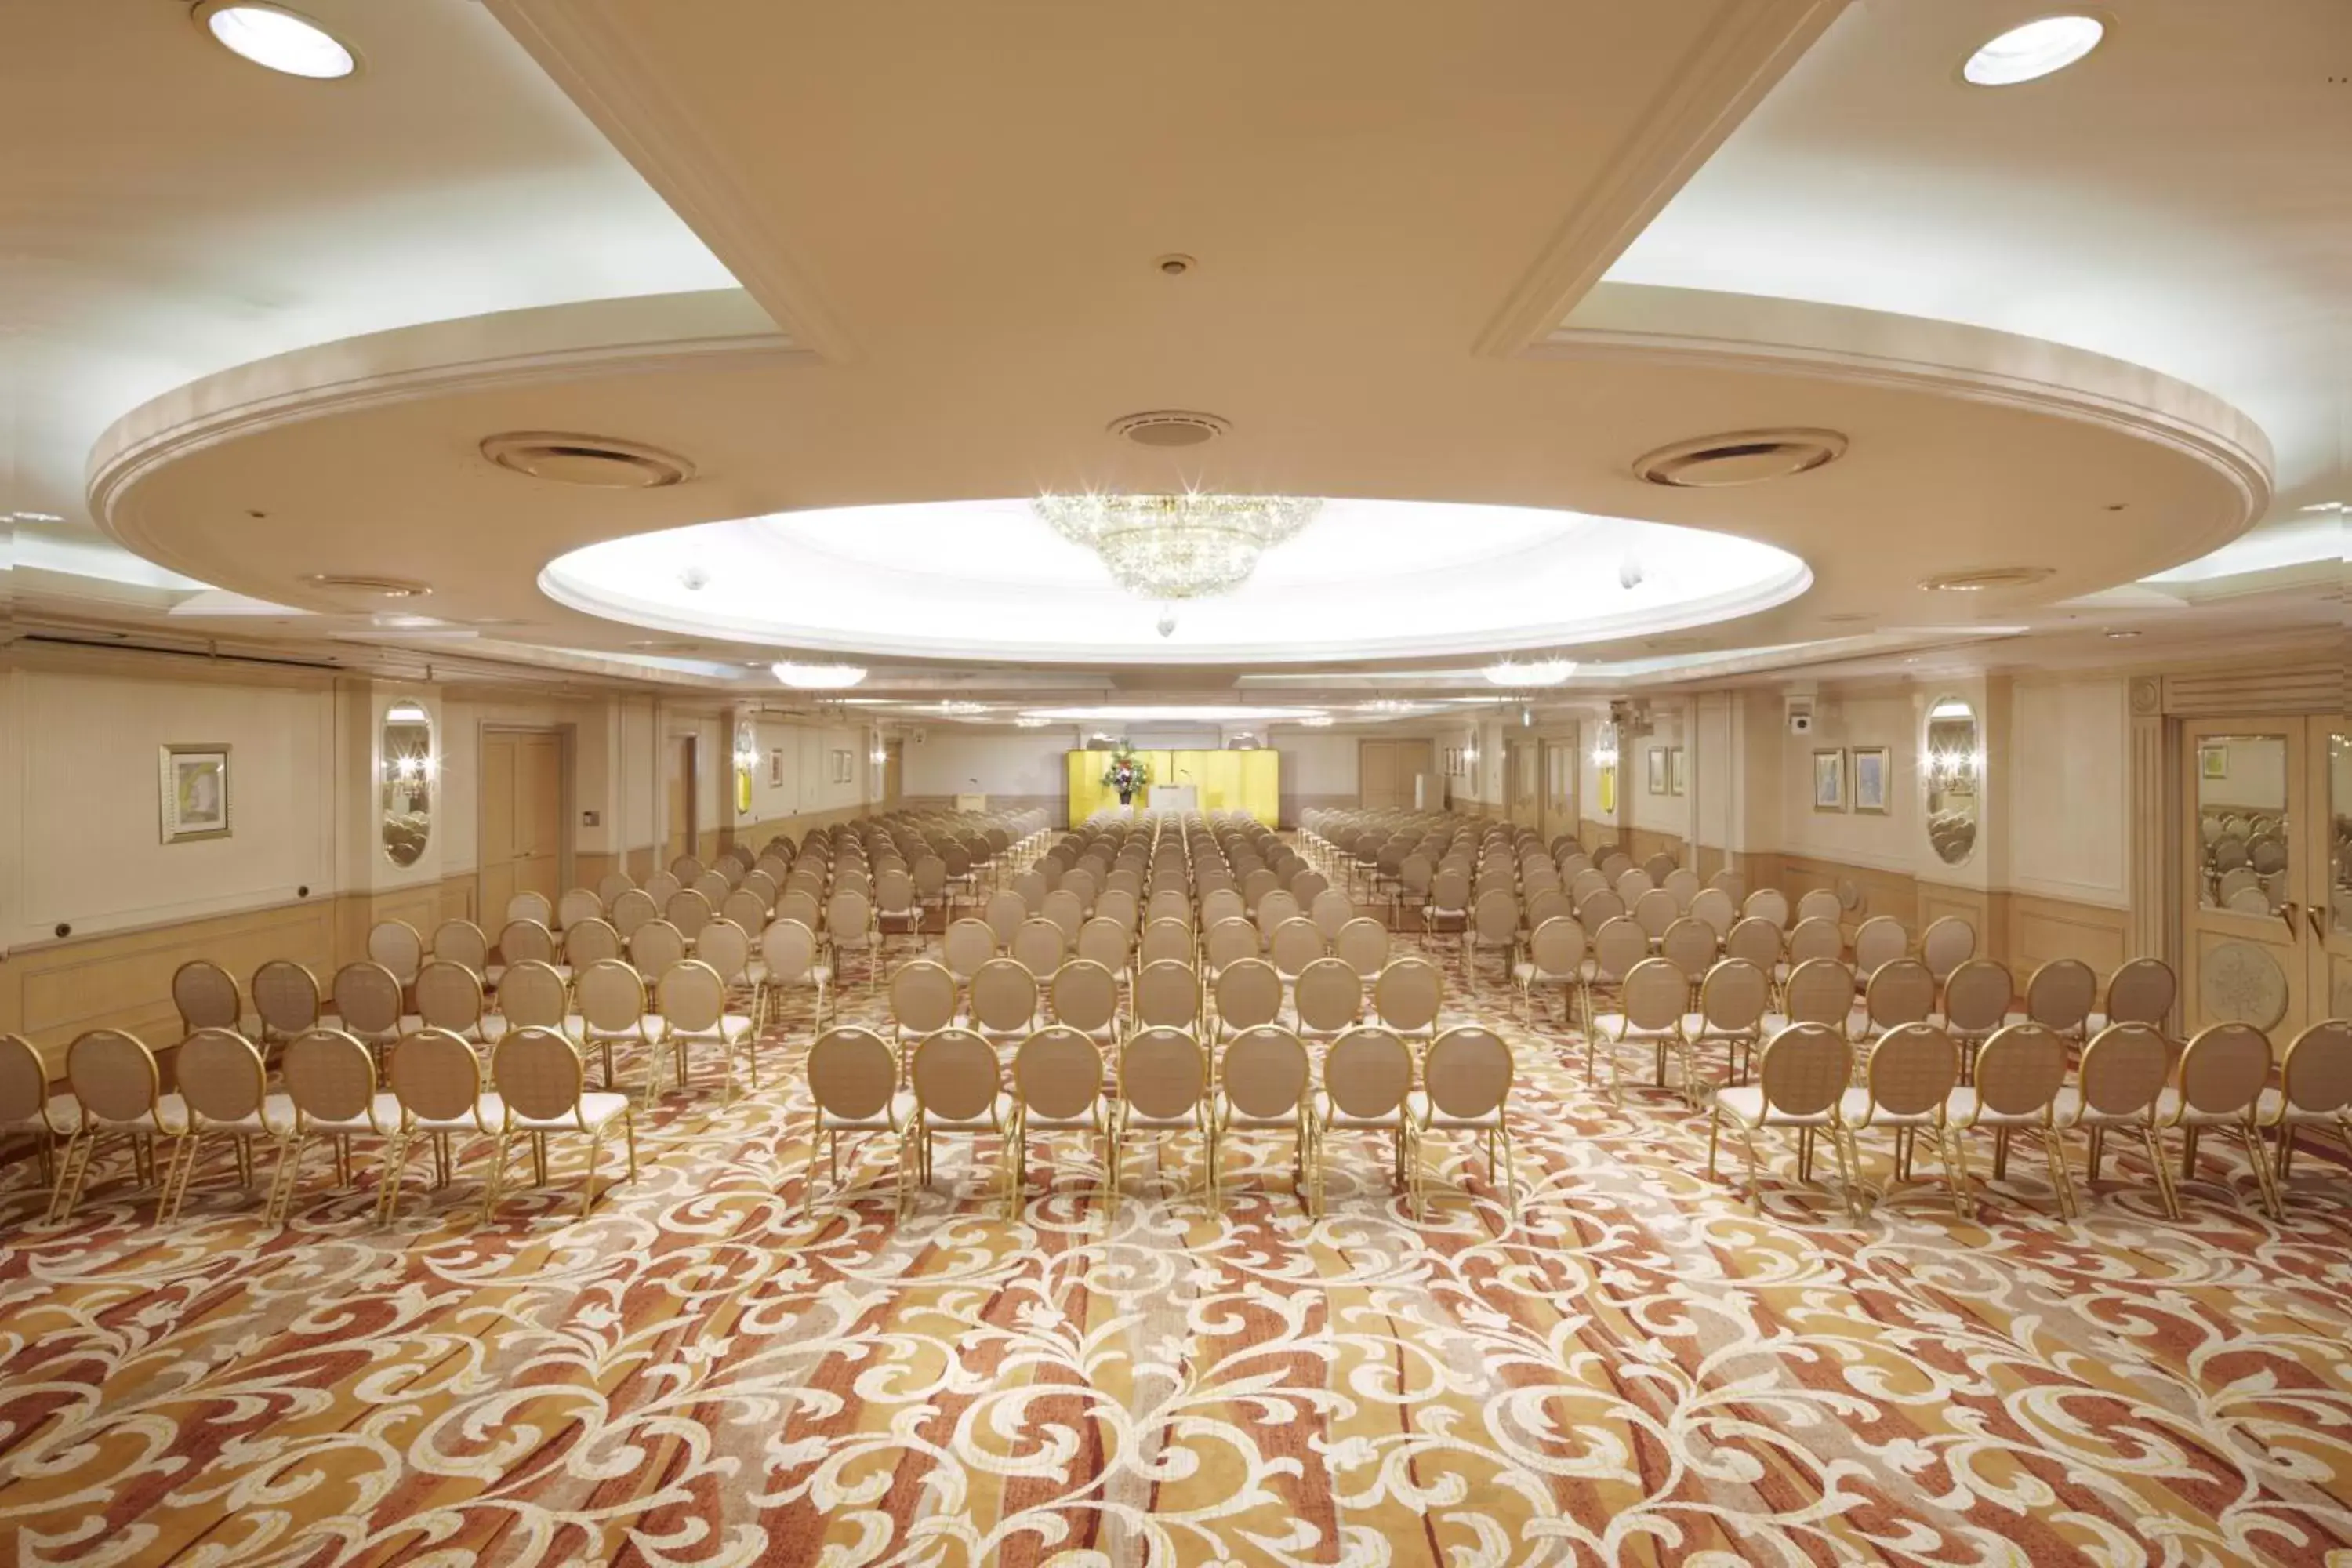 Banquet/Function facilities, Banquet Facilities in Dai-ichi Hotel Tokyo